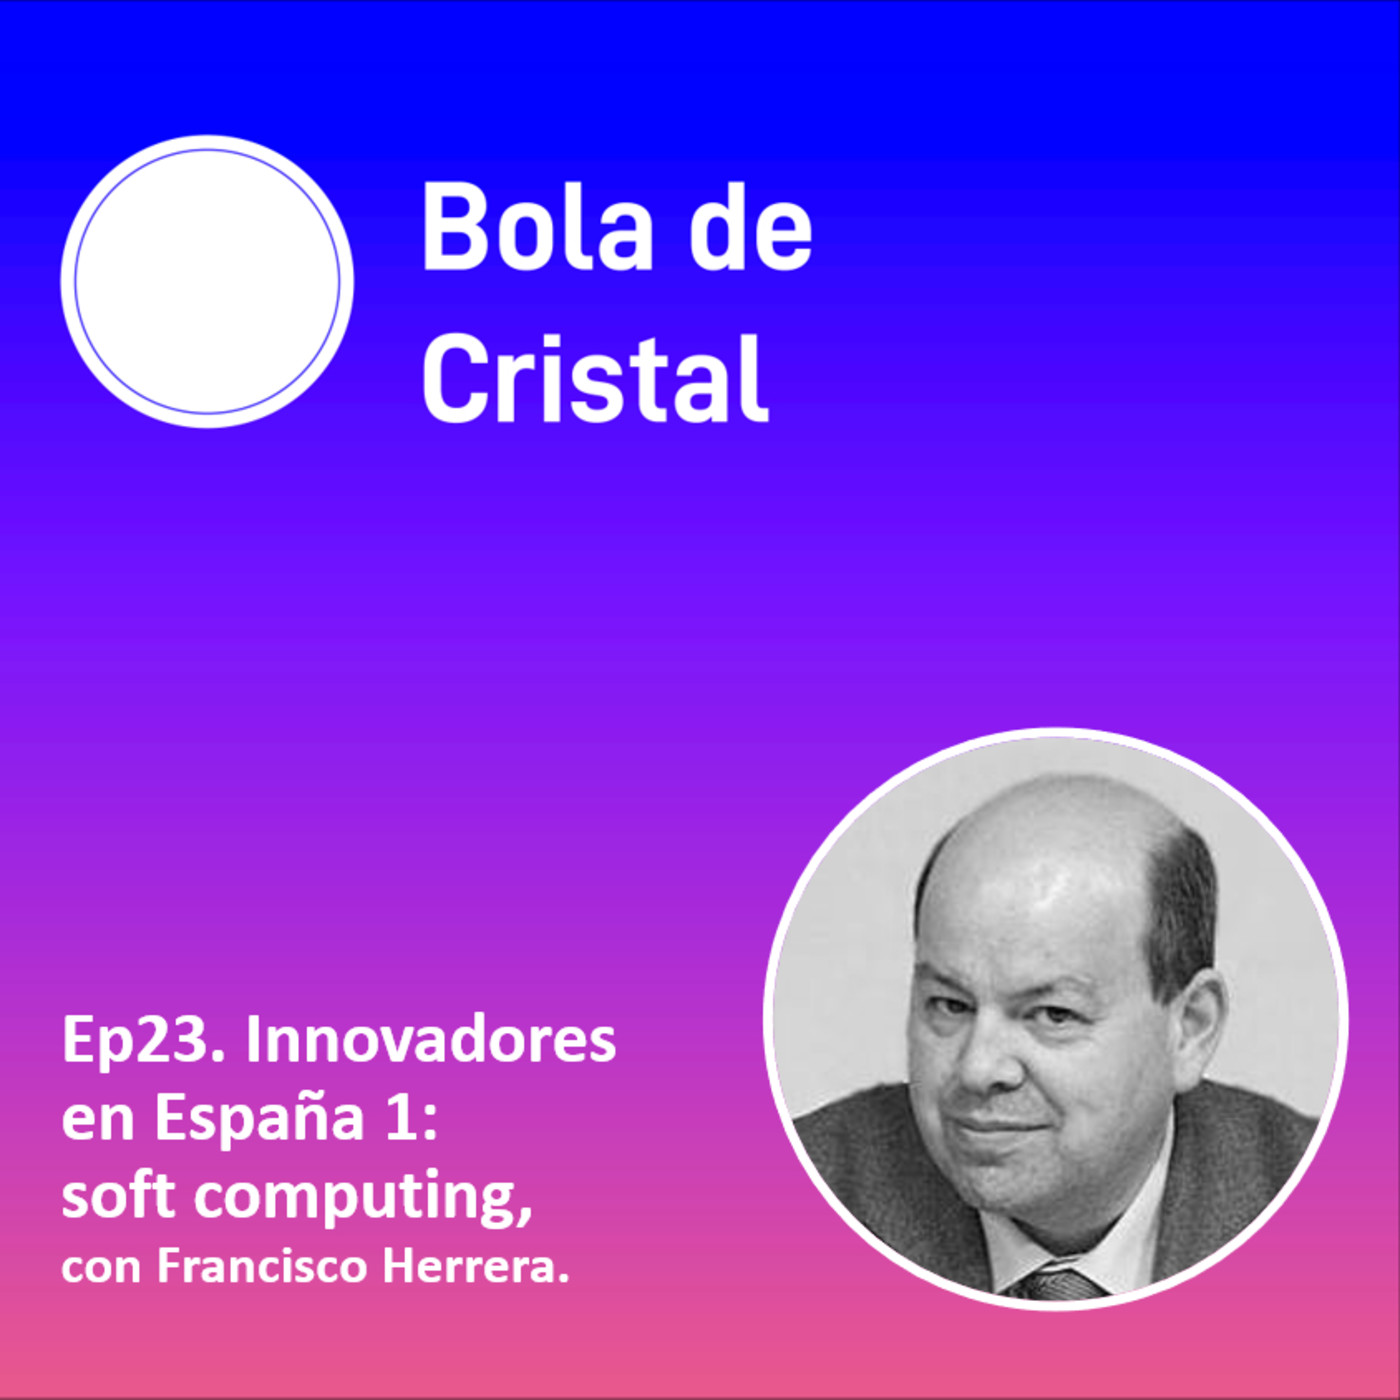 Ep23. Innovadores en España 1: Francisco Herrera y el soft computing